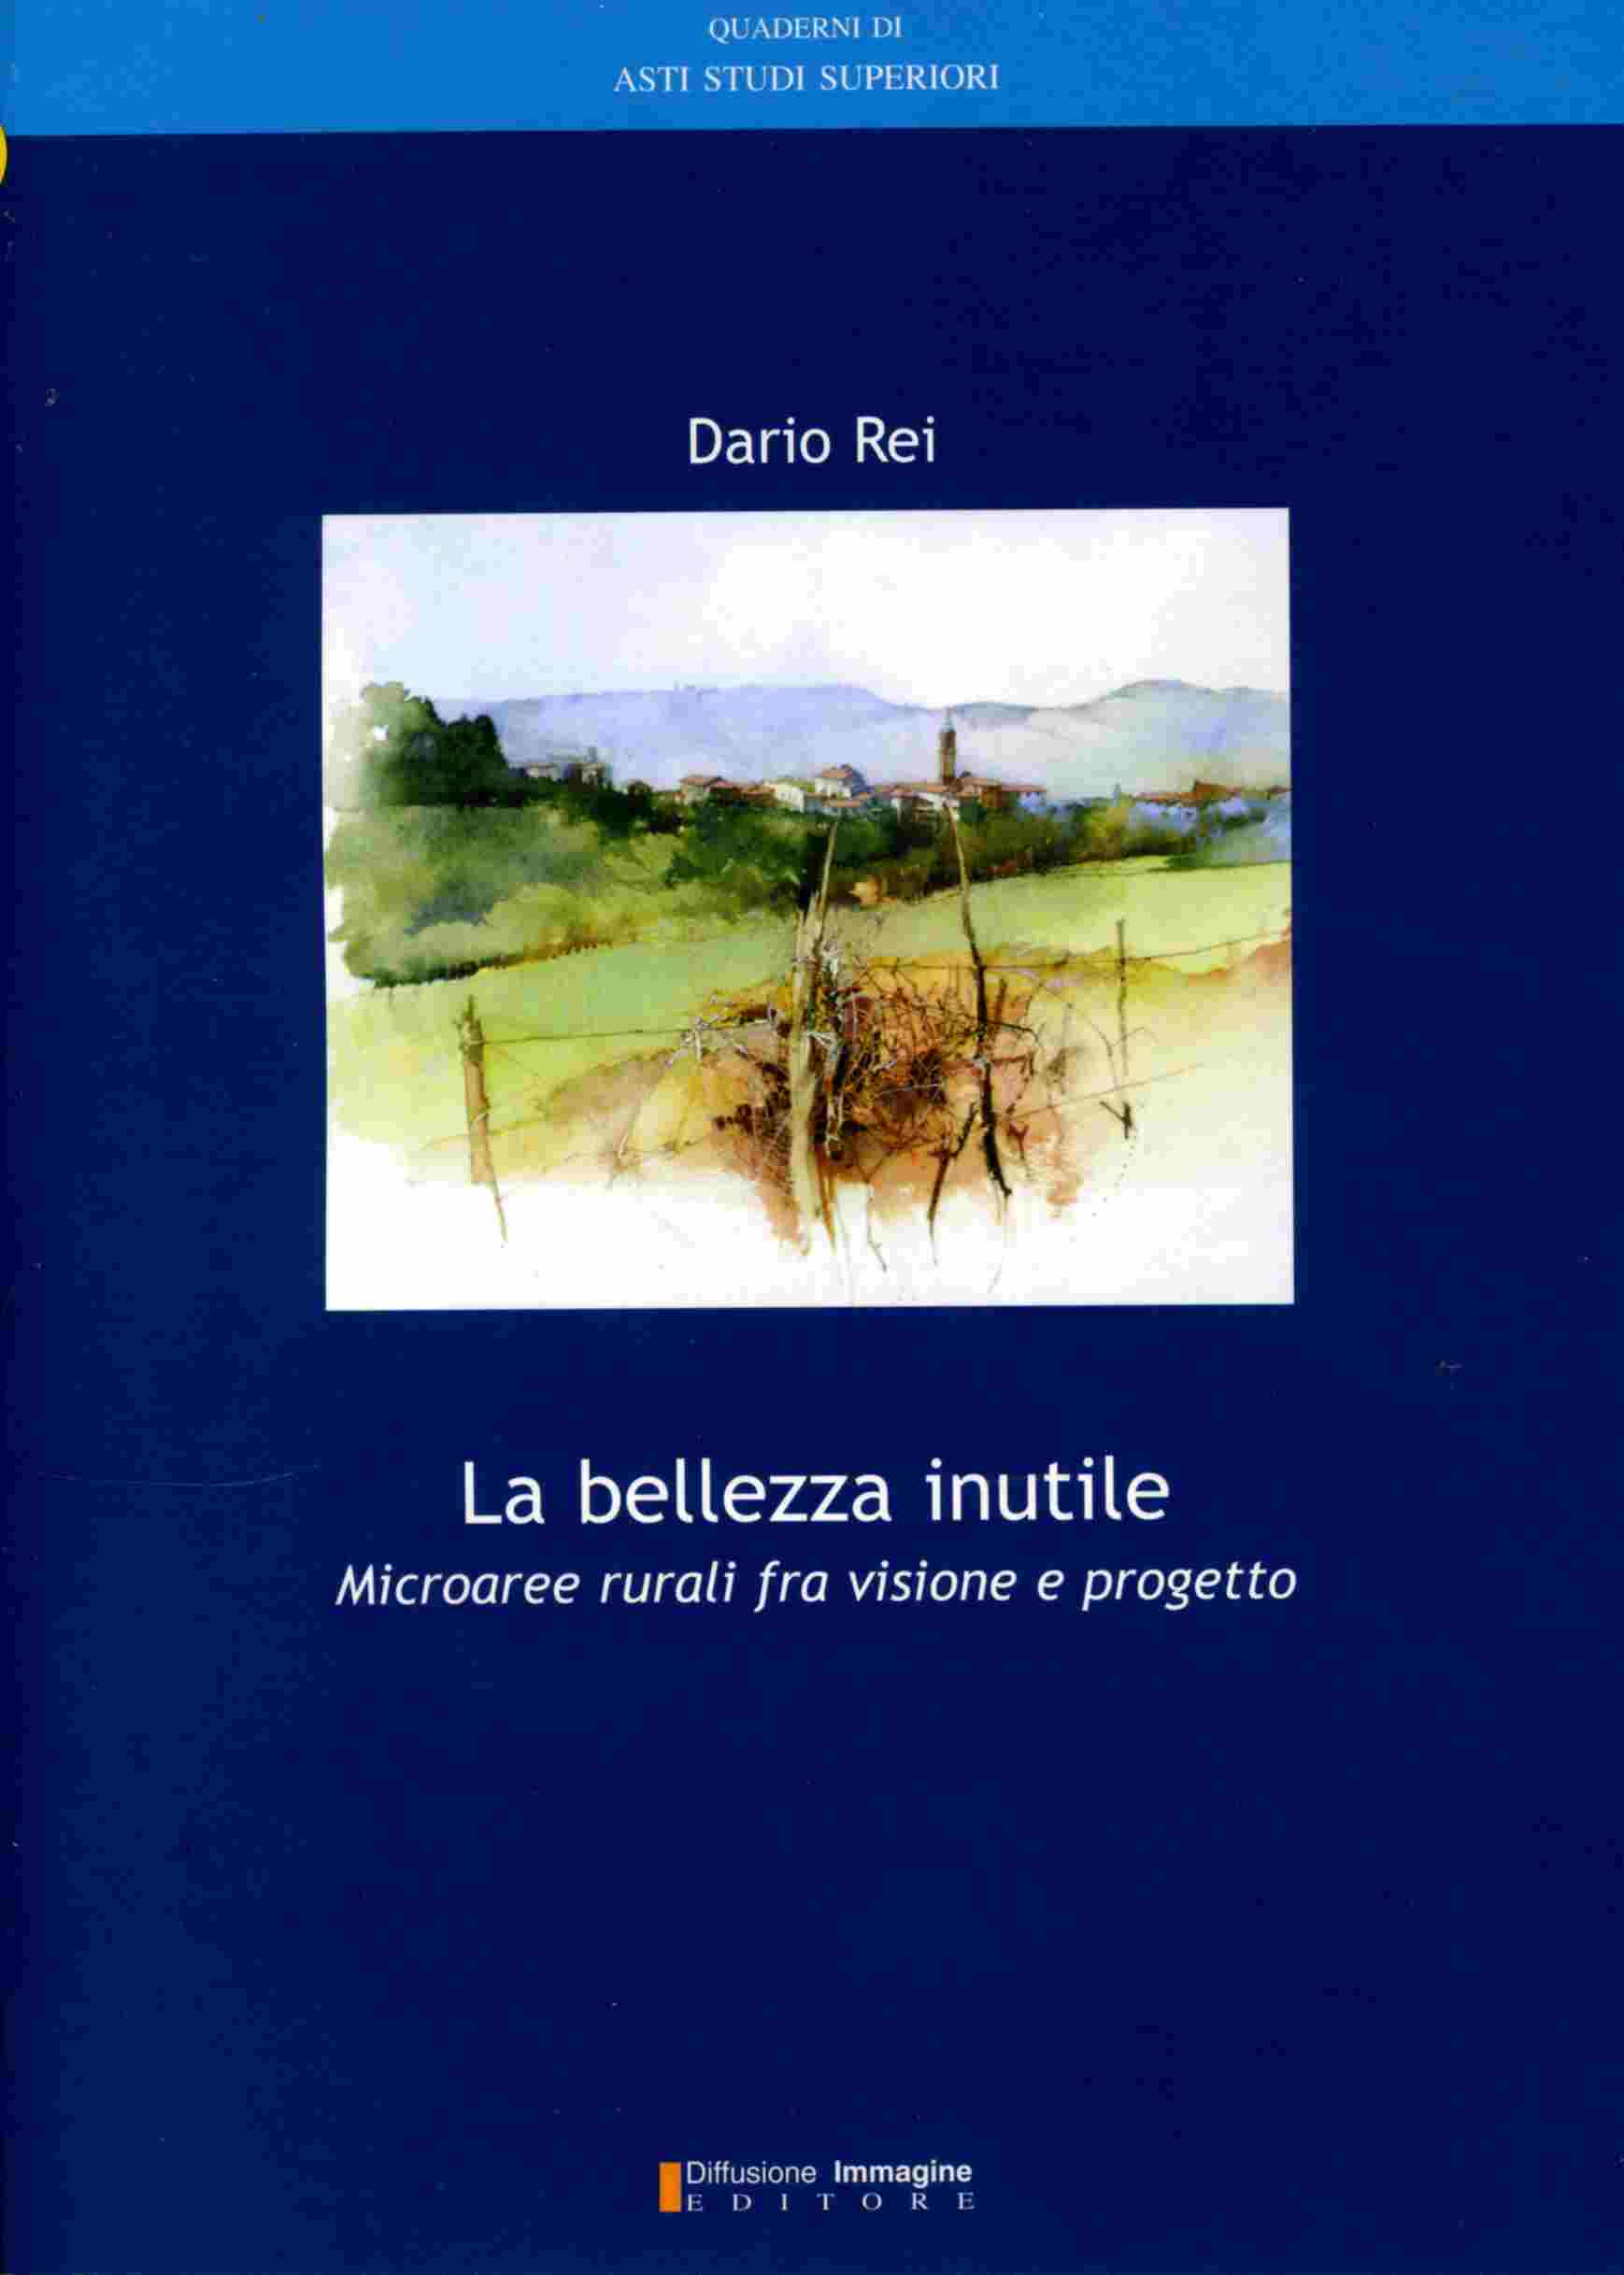 Copertina del Libro di Dario Rei "La bellezza inutile - Microaree rurali tra visione e progetto"